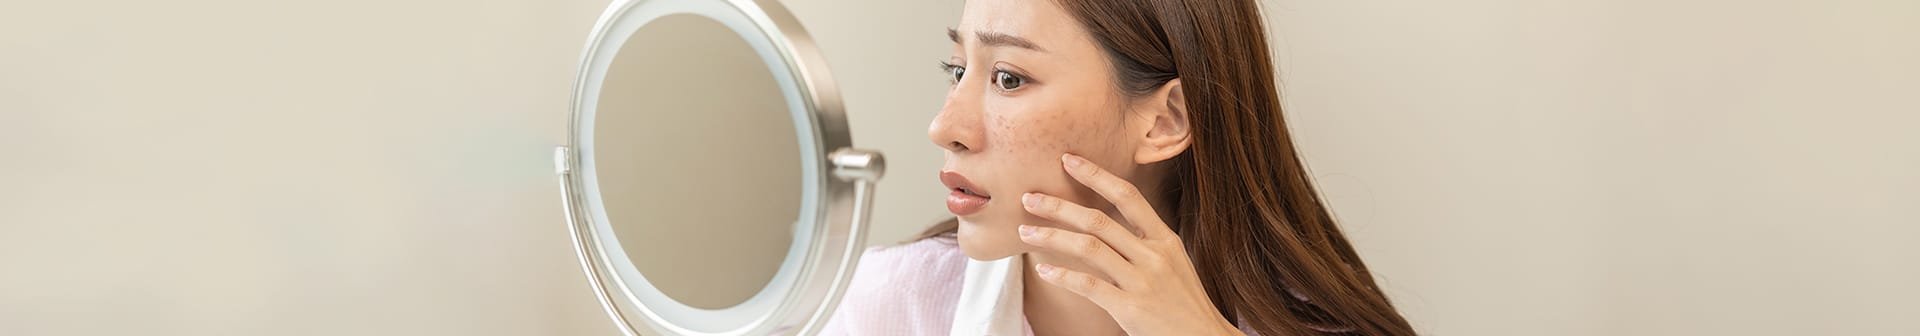 Rimedi e prodotti per ridurre le macchie scure del viso